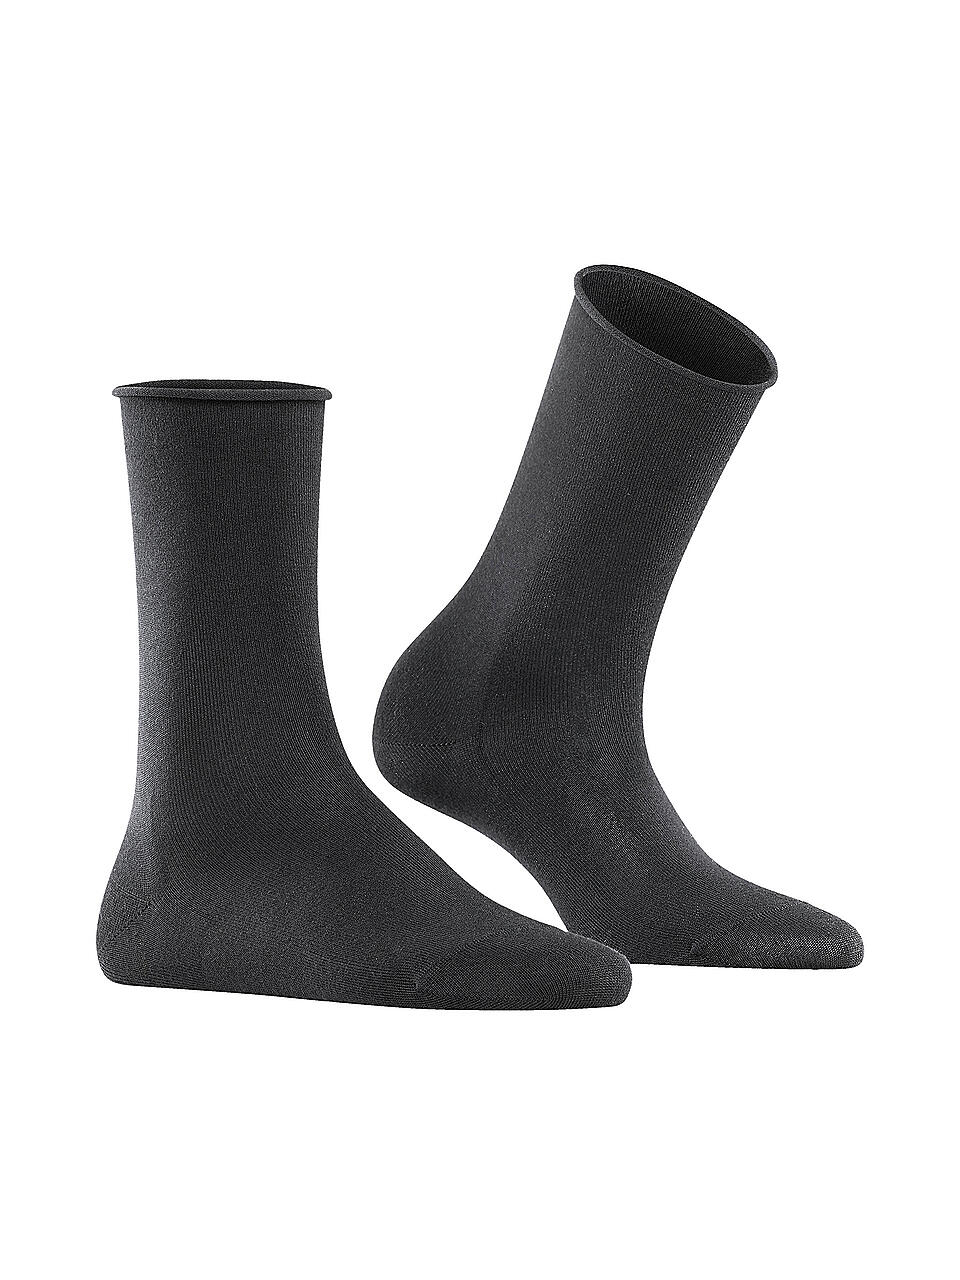 FALKE | Damen Socken ACTIVE BREEZE black | schwarz